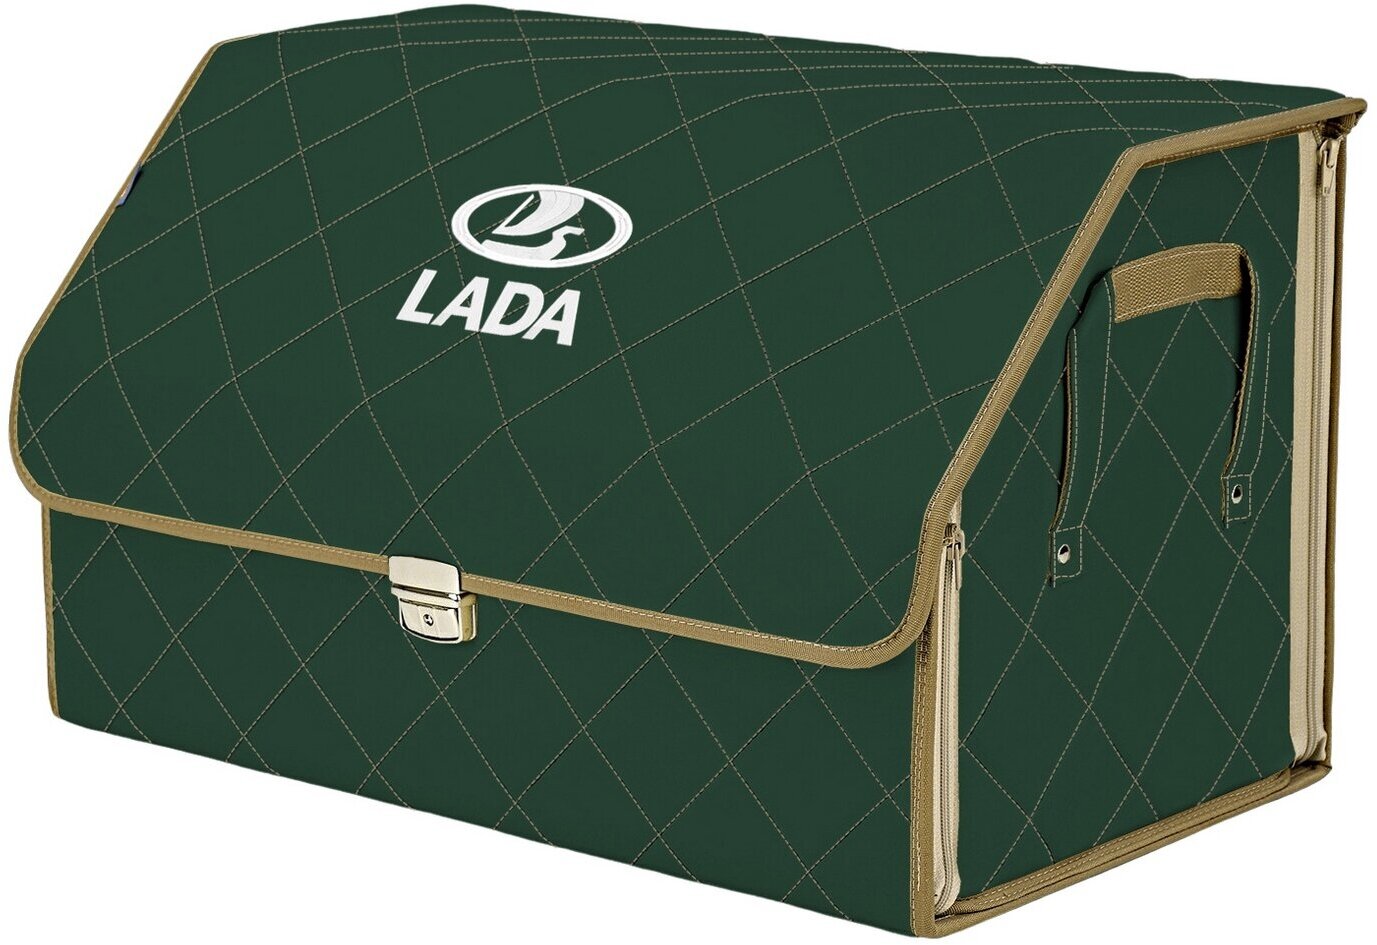 Органайзер-саквояж в багажник "Союз Премиум" (размер XL). Цвет: зеленый с бежевой прострочкой Ромб и вышивкой LADA (лада).